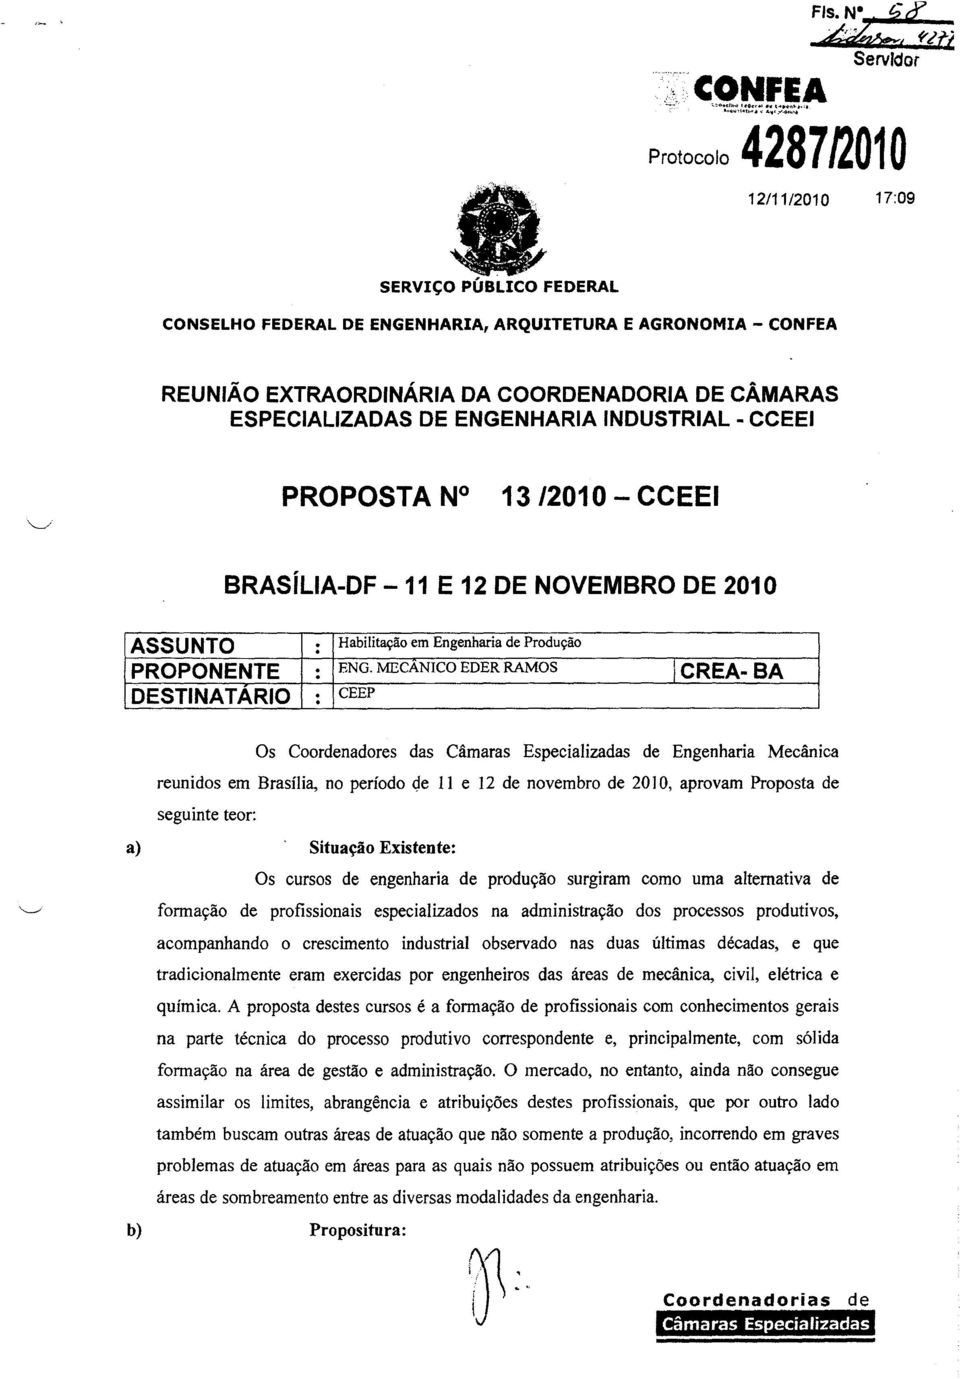 MECANCO EDER RAMOS CREA-BA DESTNA TARO CEEP Os Coordenadores das Câmaras Especalzadas de Engenhara Mecânca reundos em Brasíla, no período qe 11 e 12 de novembro de 2010, aprovam Proposta de segunte